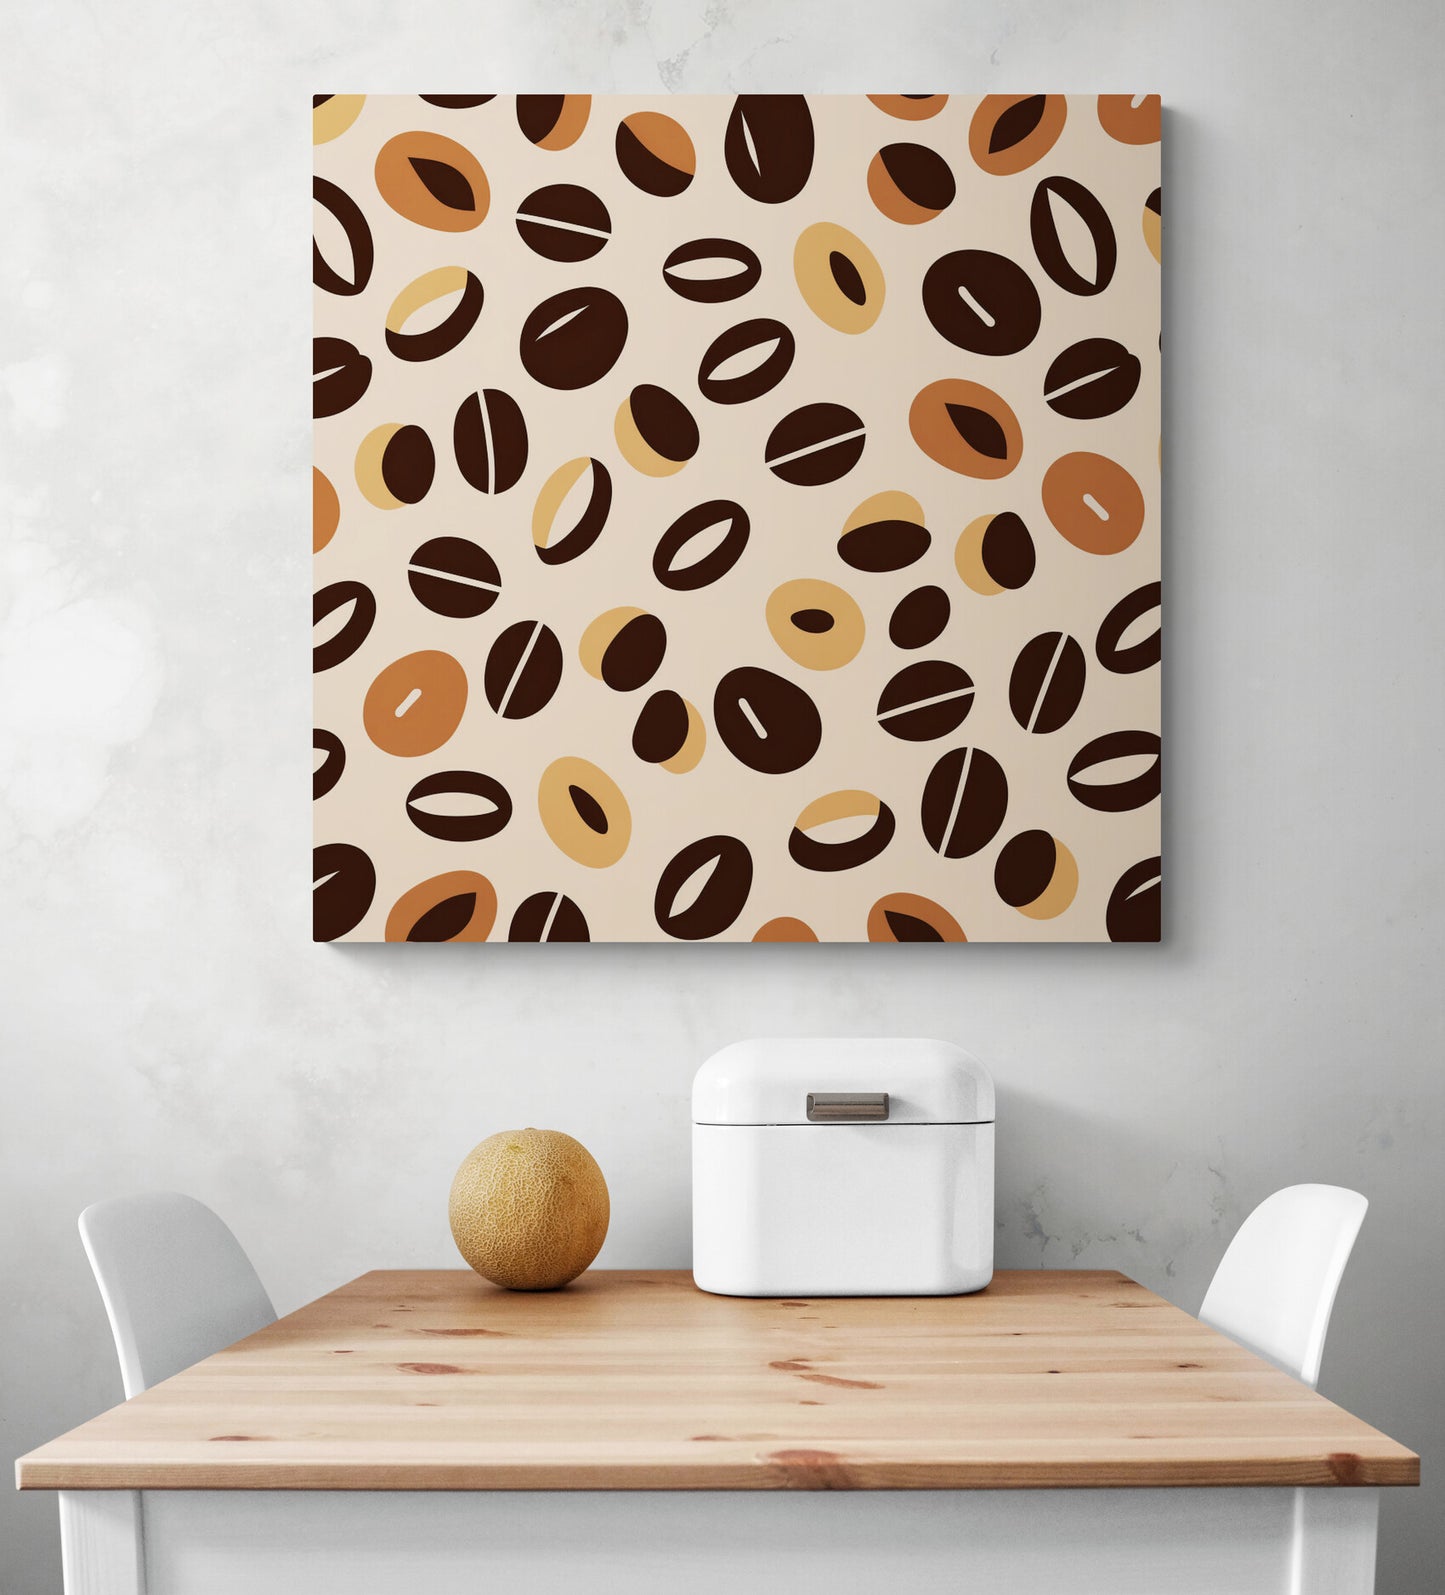 Grand tableau cuisine, accrocher sur un mur, tableau motif grains de café. Aux couleurs marron, orange et beige, inspiré du style africain, des grains de café qui se répètent avec des variances dans les formes